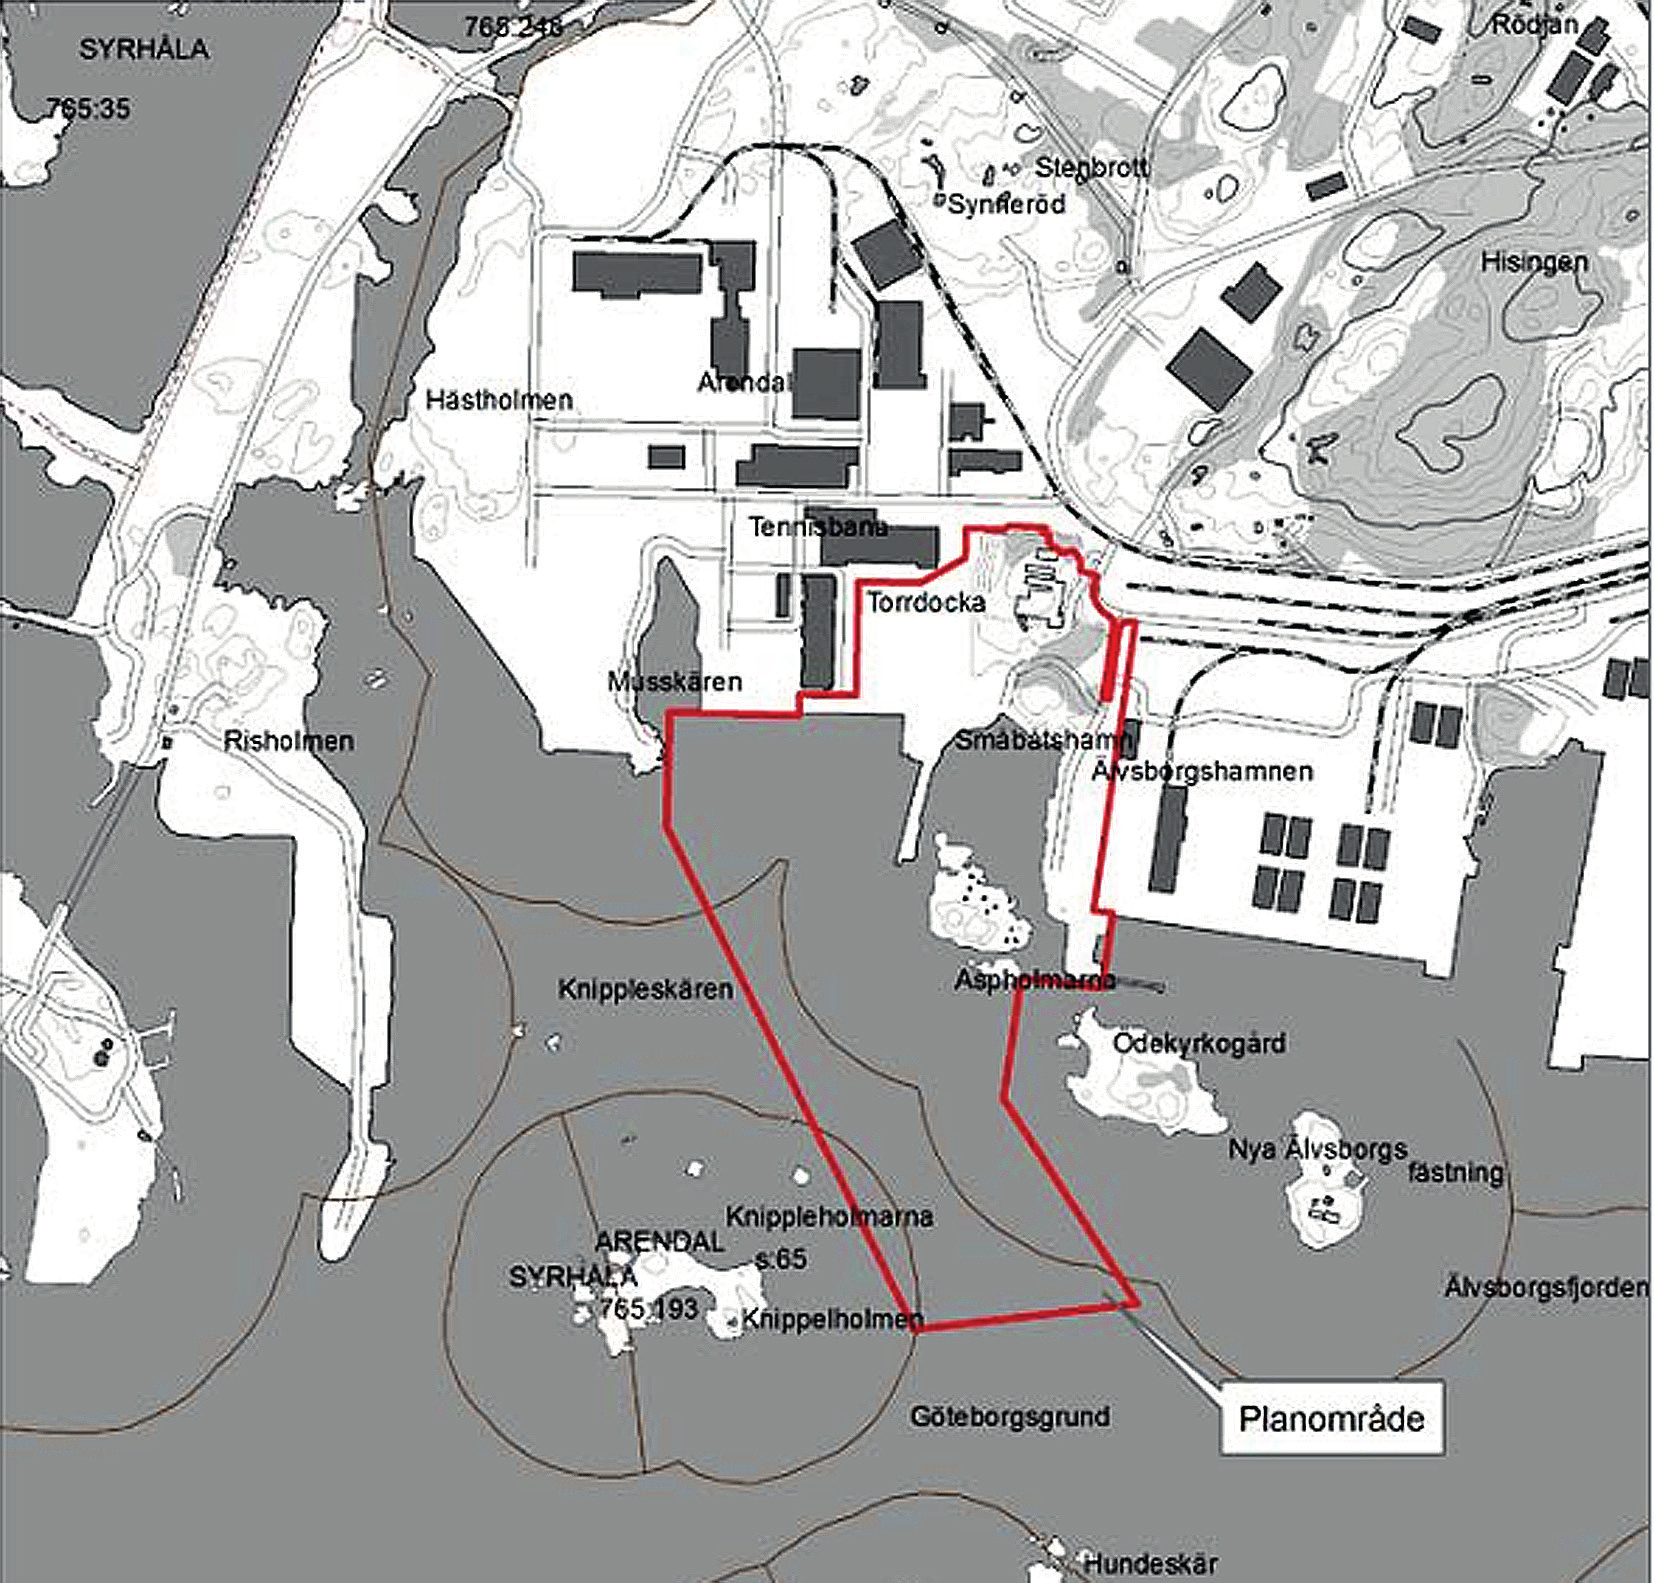 Illustration 3. Kartan visar att hela Lilla Aspholmen ingår i det nya detaljplaneområdet samt att kajområdet kommer att påverka miljön runt fästningen Nya Älvsborg.